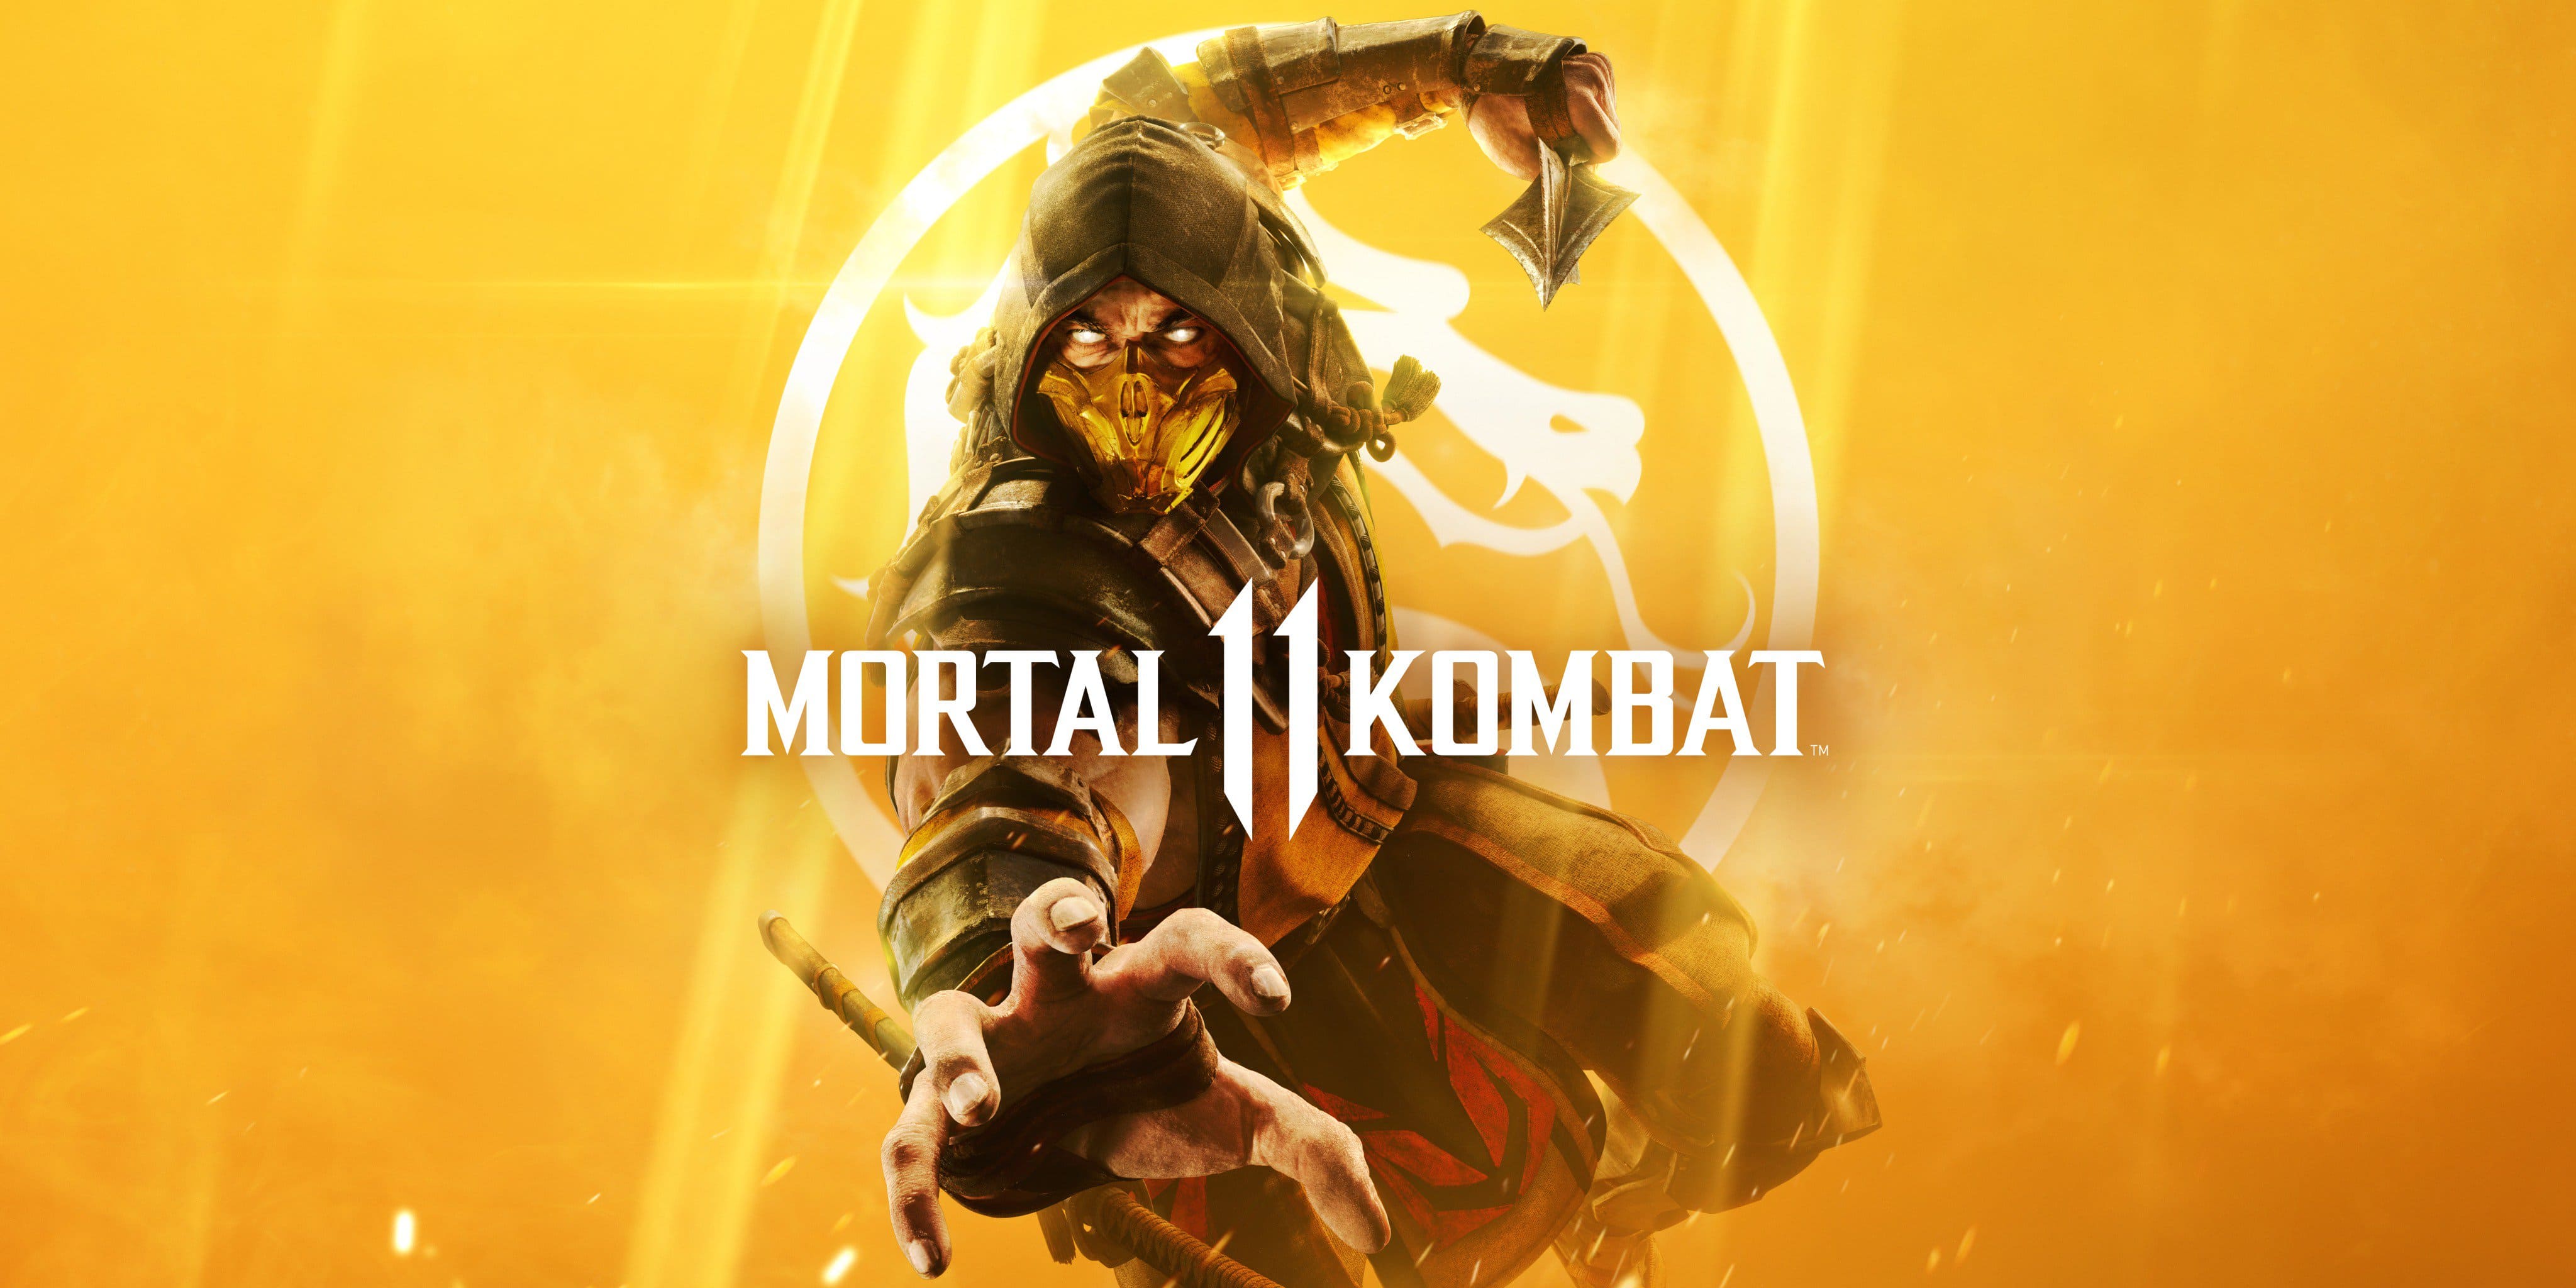 シリーズ最新作 Mortal Kombat 11 モータルコンバット11 が海外で発売 Funglr Games